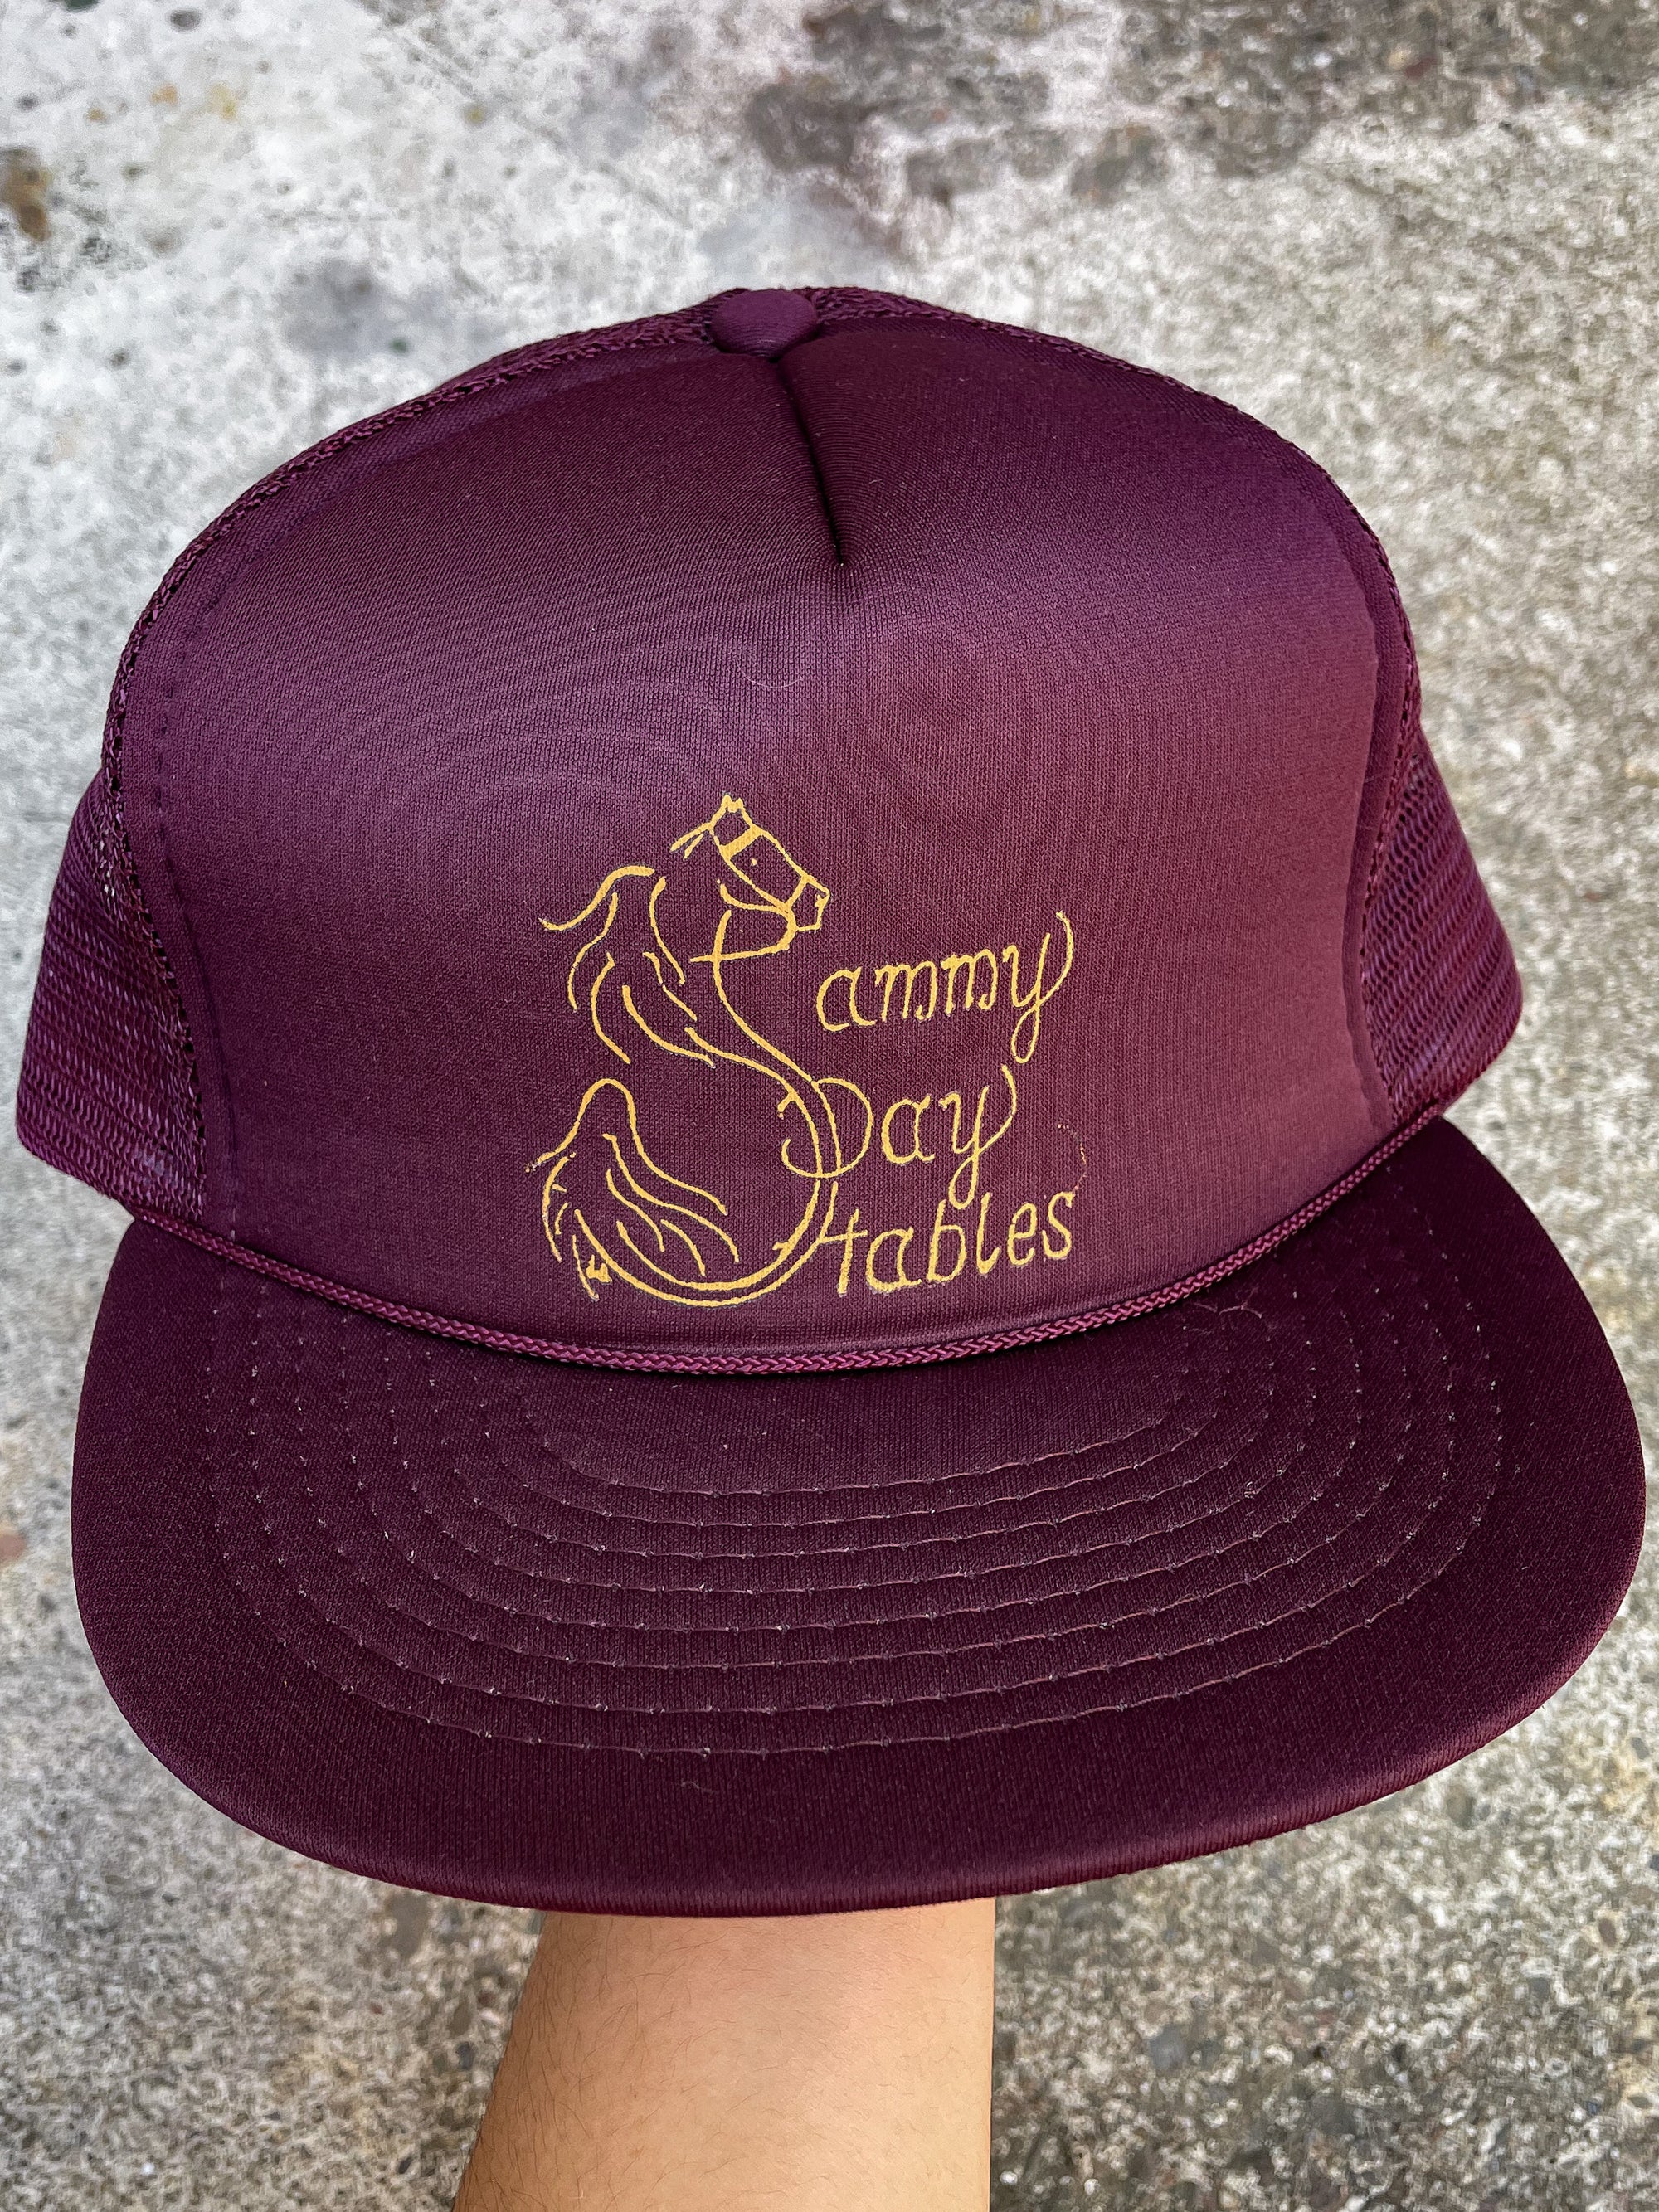 1990s “Sammy Day Stables” Trucker Hat